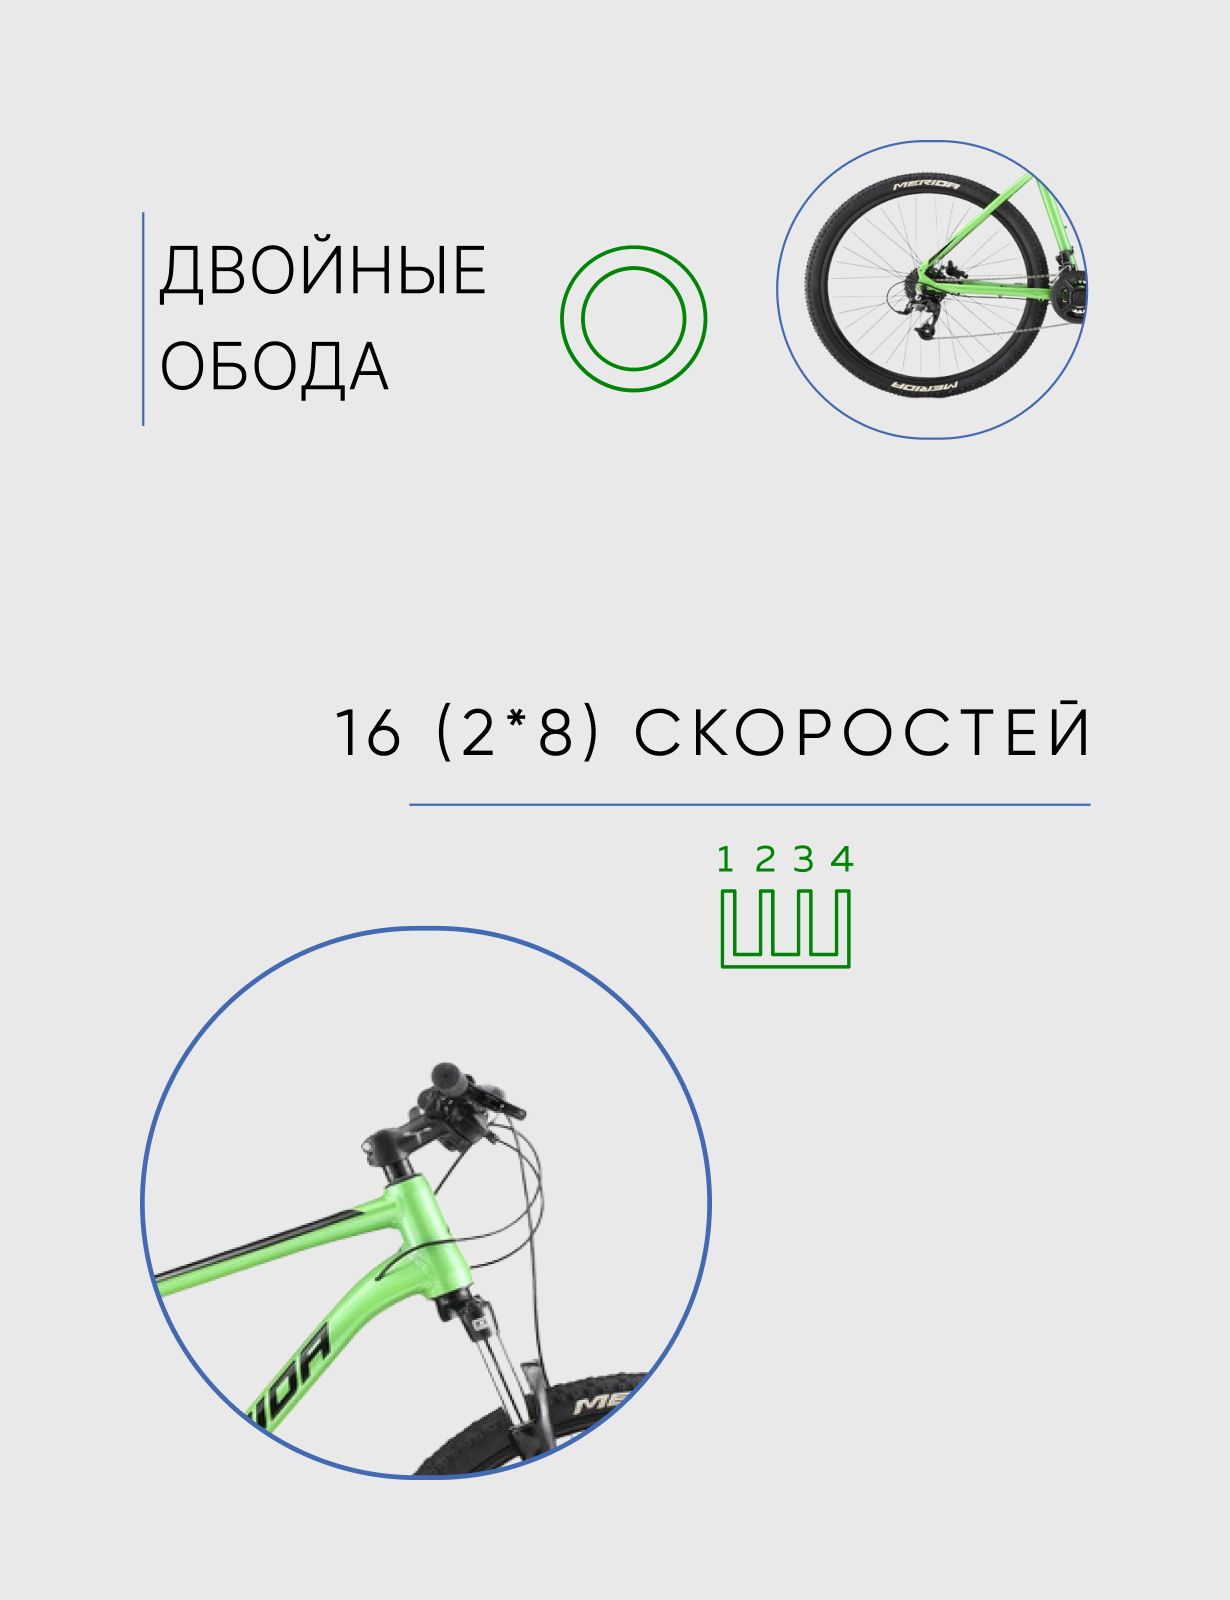 Горный велосипед Merida Big.Seven Limited 2.0, год 2022, цвет Зеленый-Черный, ростовка 17